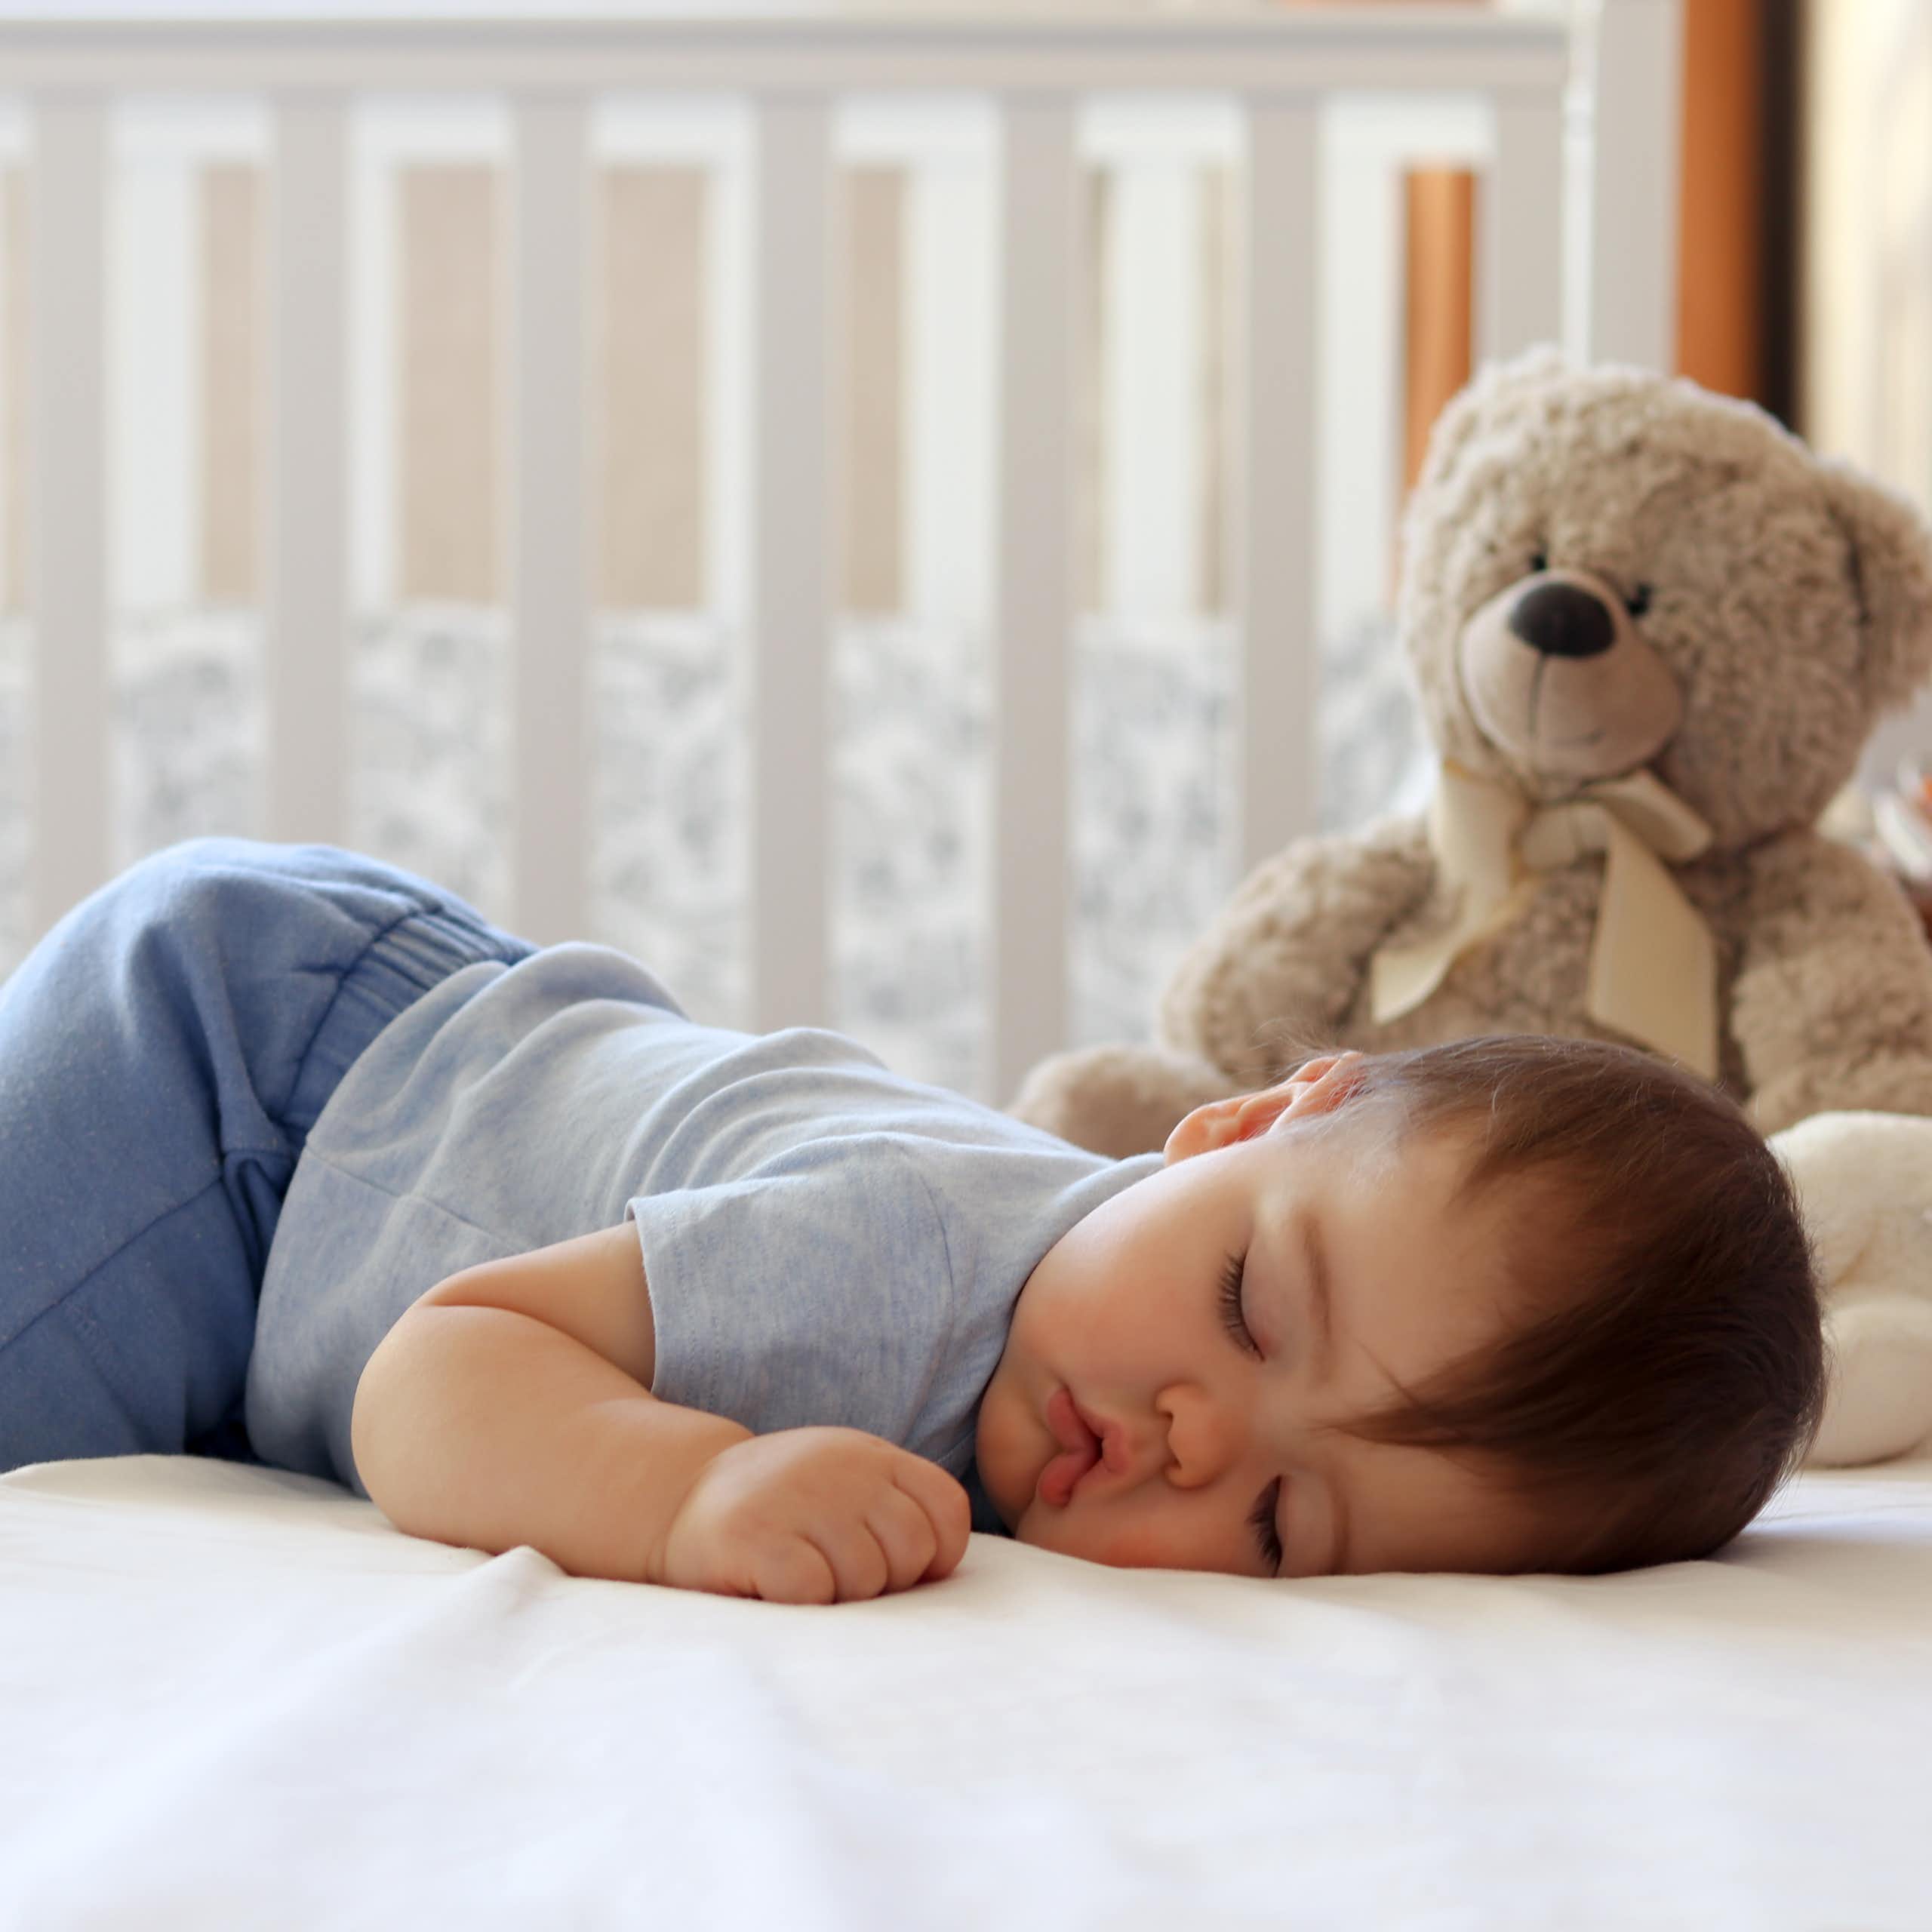 Entraîner bébé à dormir ? C'est bon pour lui, et pour vous!